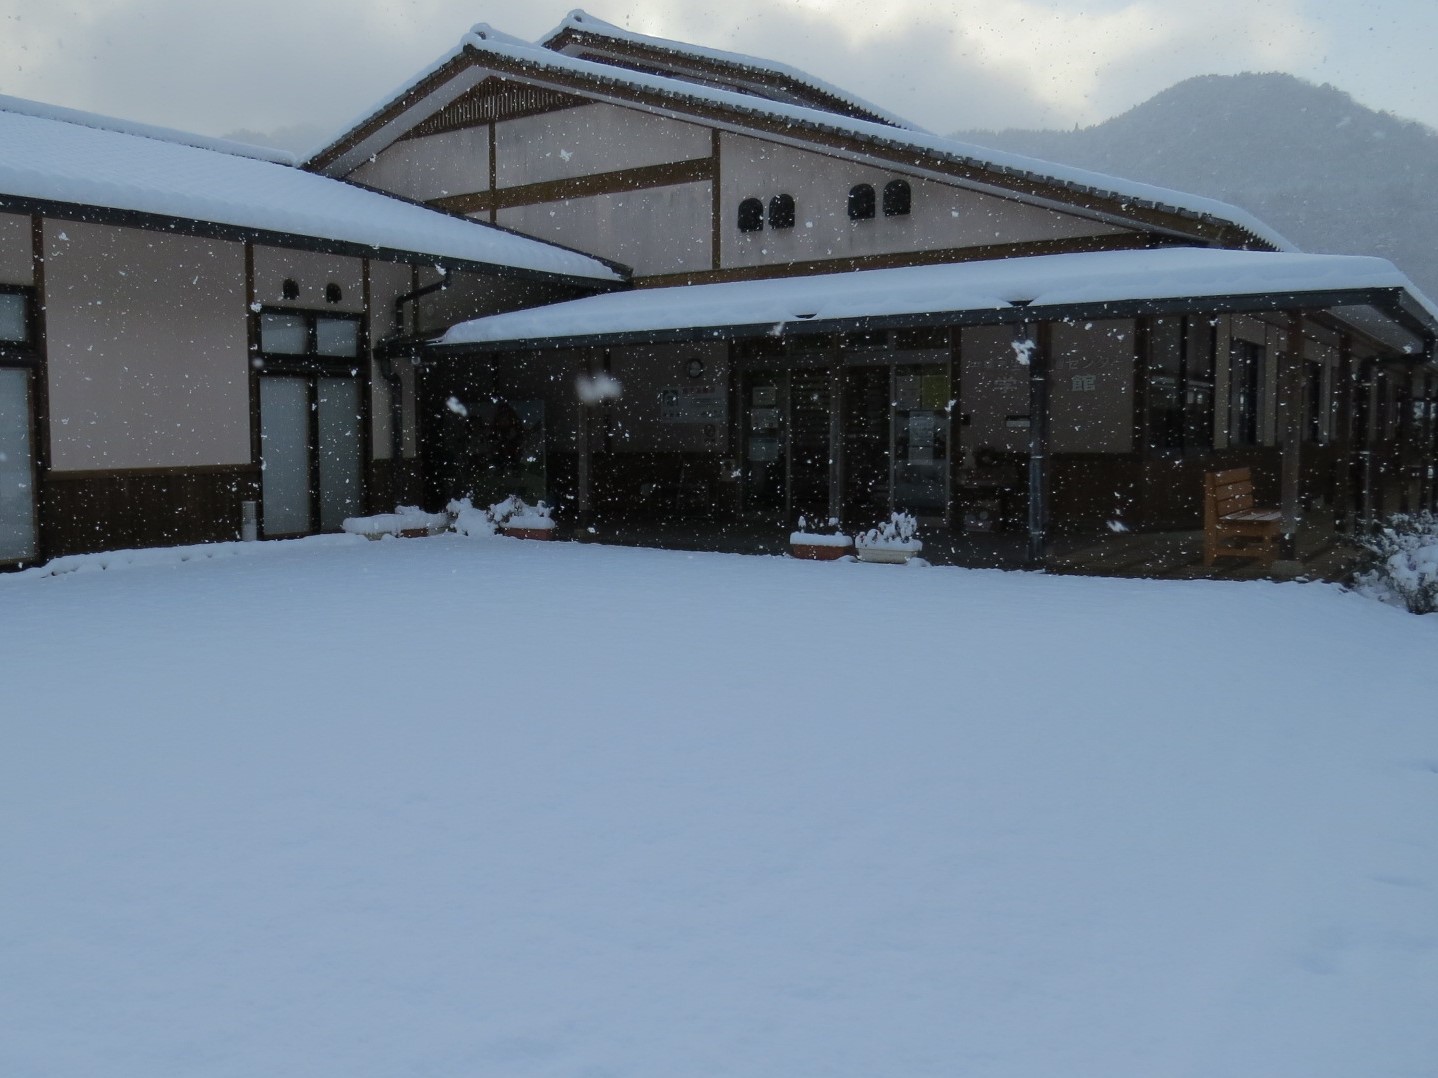 令和3年、学遊館が初雪景色に包まれた写真